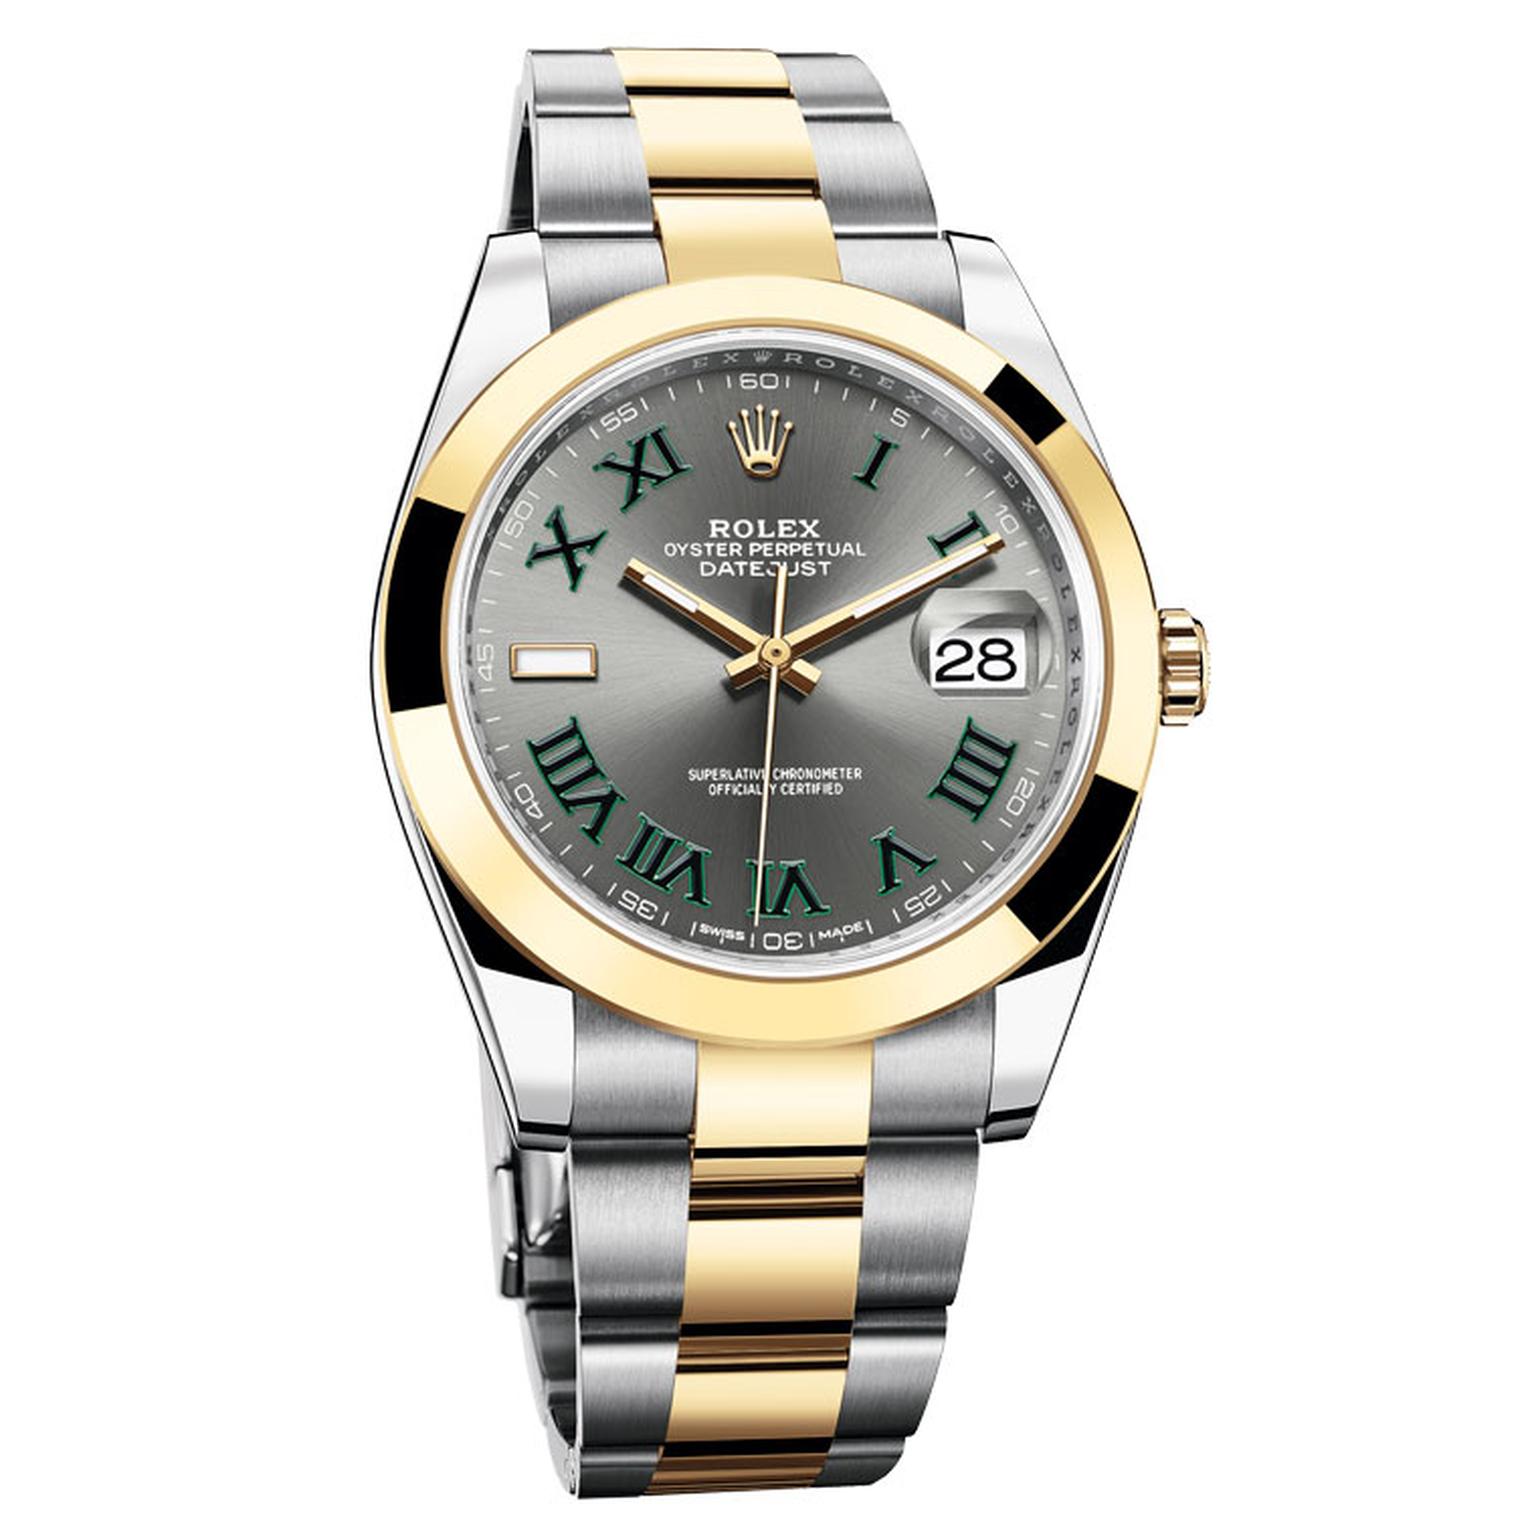 Rolex Datejust 41mm watch